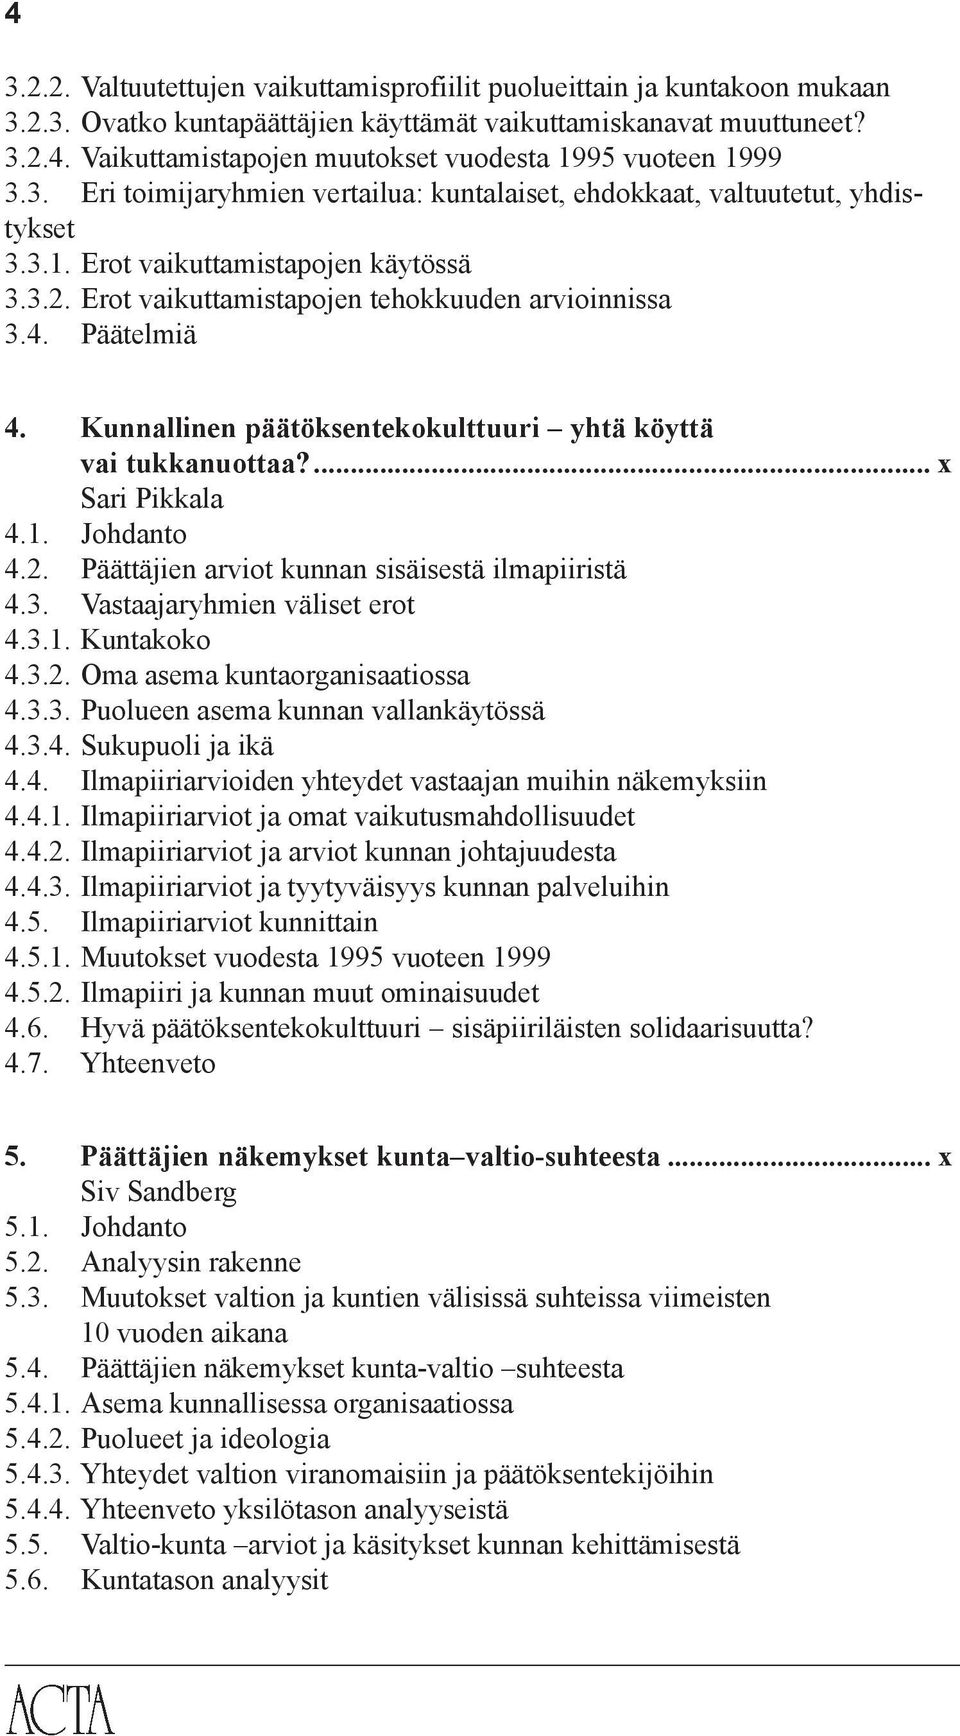 Kunnallinen päätöksentekokulttuuri yhtä köyttä vai tukkanuottaa?... x Sari Pikkala 4.1. Johdanto 4.2. Päättäjien arviot kunnan sisäisestä ilmapiiristä 4.3. Vastaajaryhmien väliset erot 4.3.1. Kuntakoko 4.